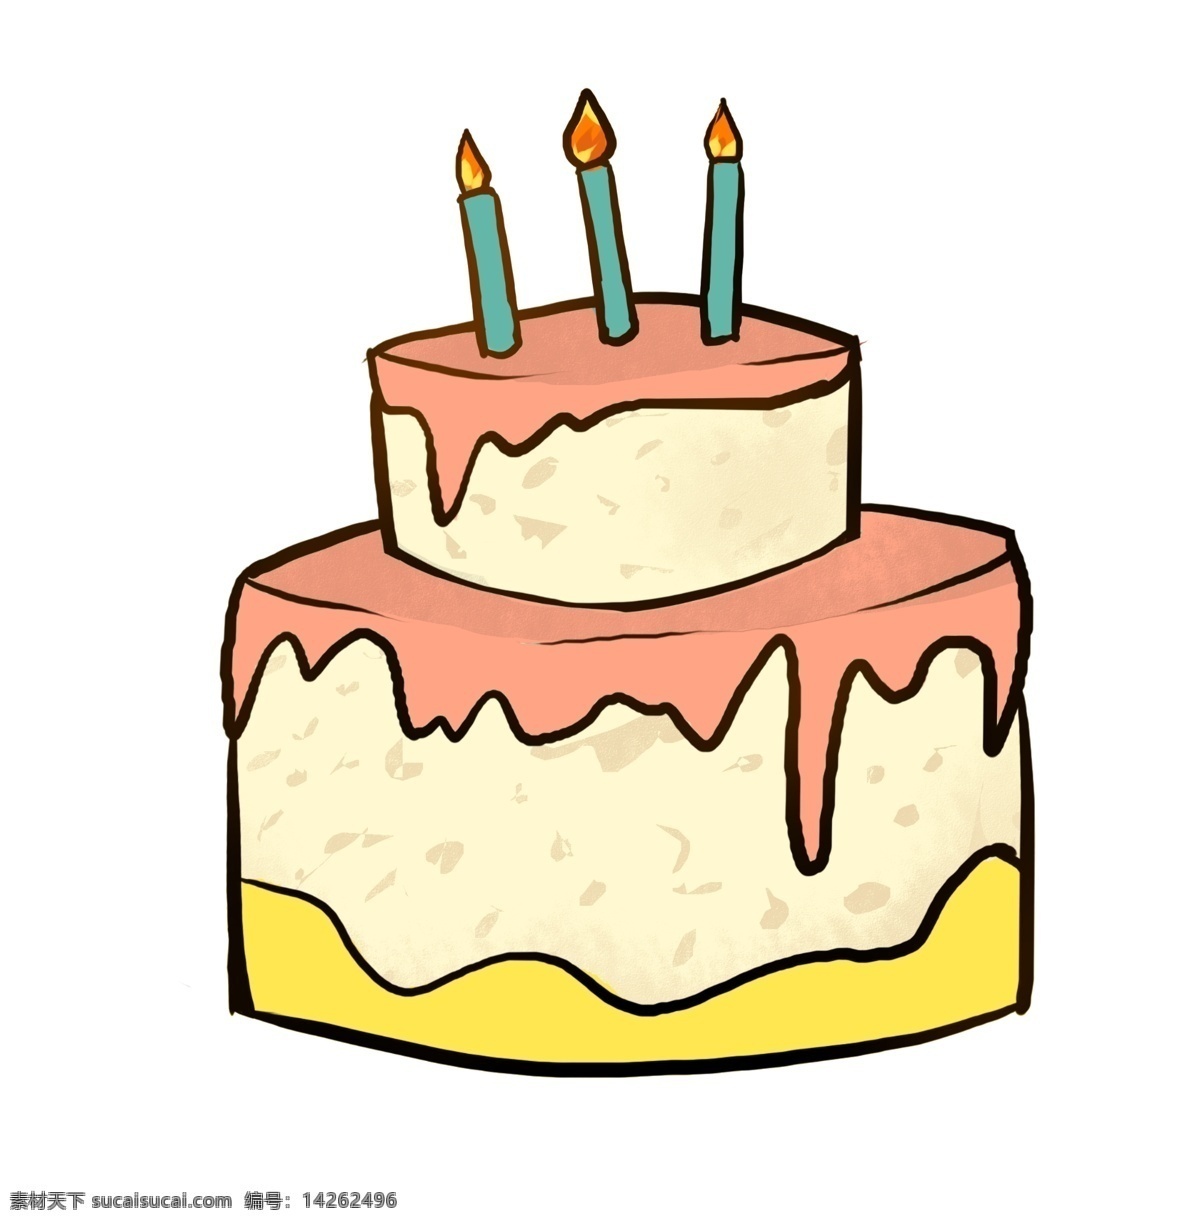 生日蛋糕 卡通 插画 燃烧的蜡烛 卡通插画 生日快乐 蛋糕 过生日 生日会 生日的蜡烛